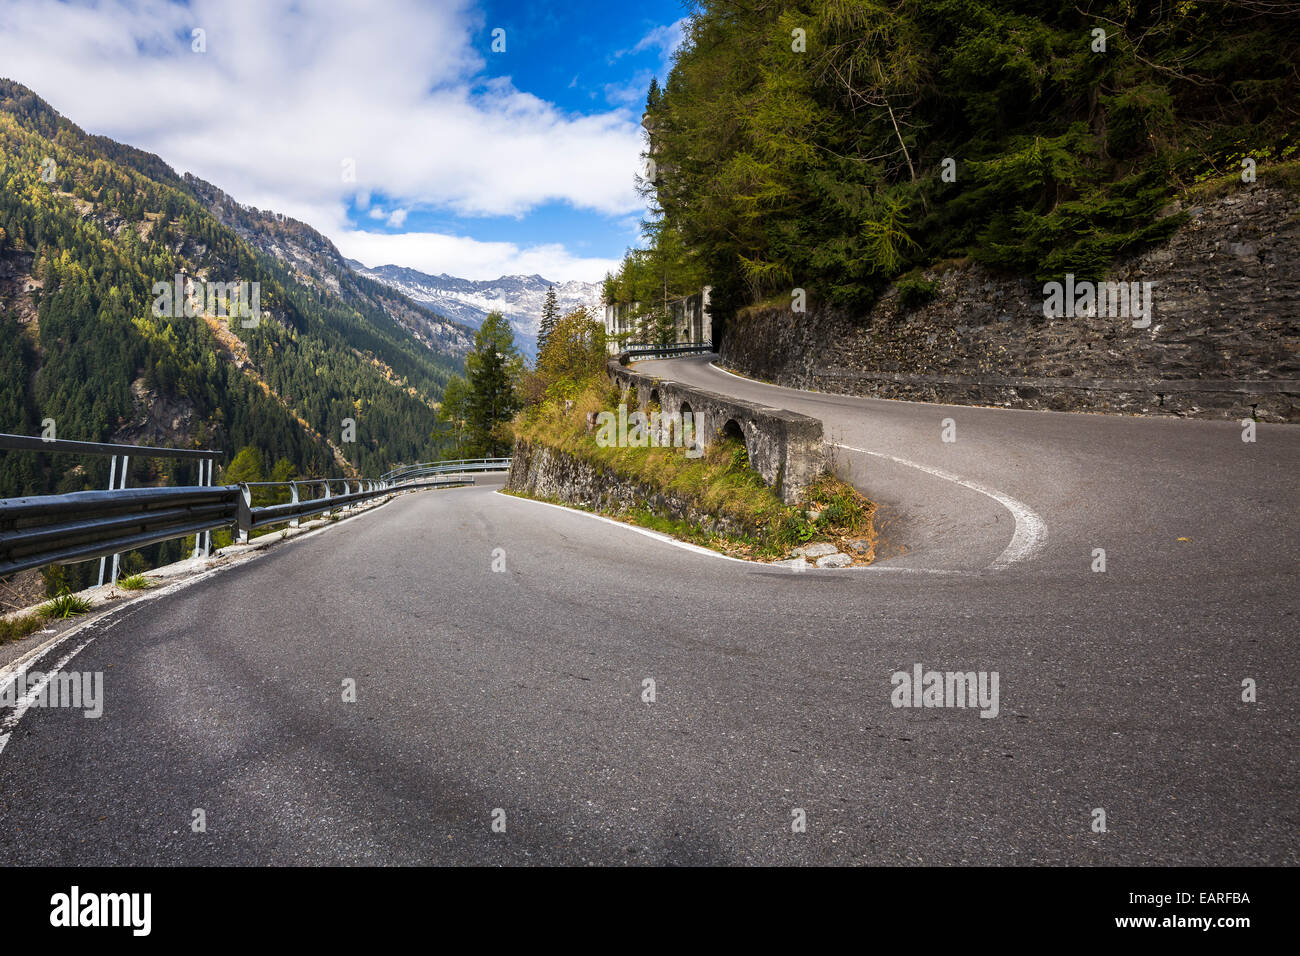 Hairpin, Splügen pass road, Sondrio province, Lombardy, Italy Stock Photo